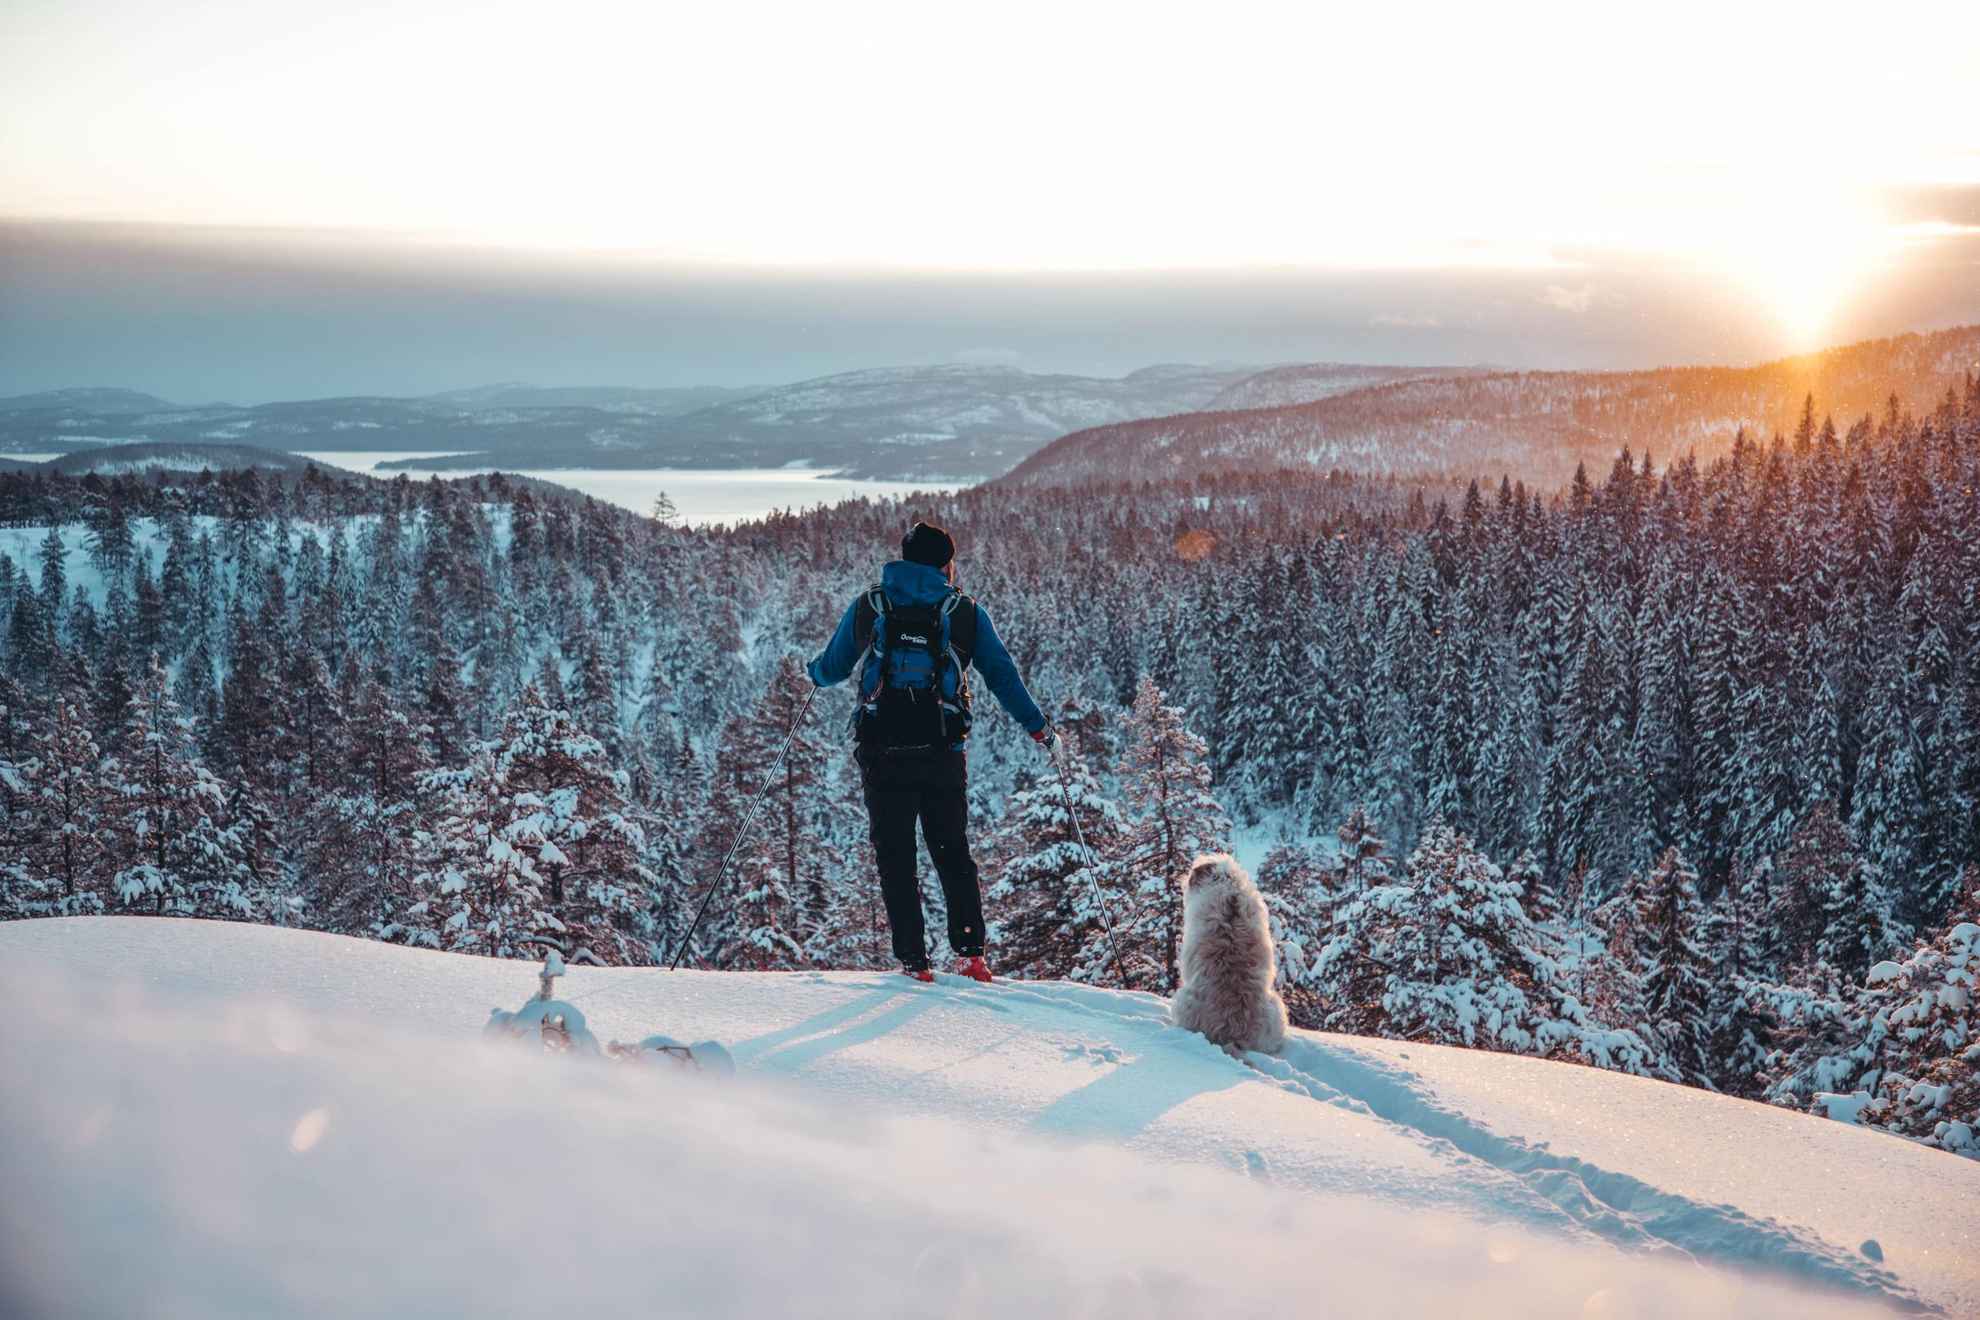 Een persoon op ski's met een hond op een berg, uitkijkend over bos en heuvels aan de hoge kust.